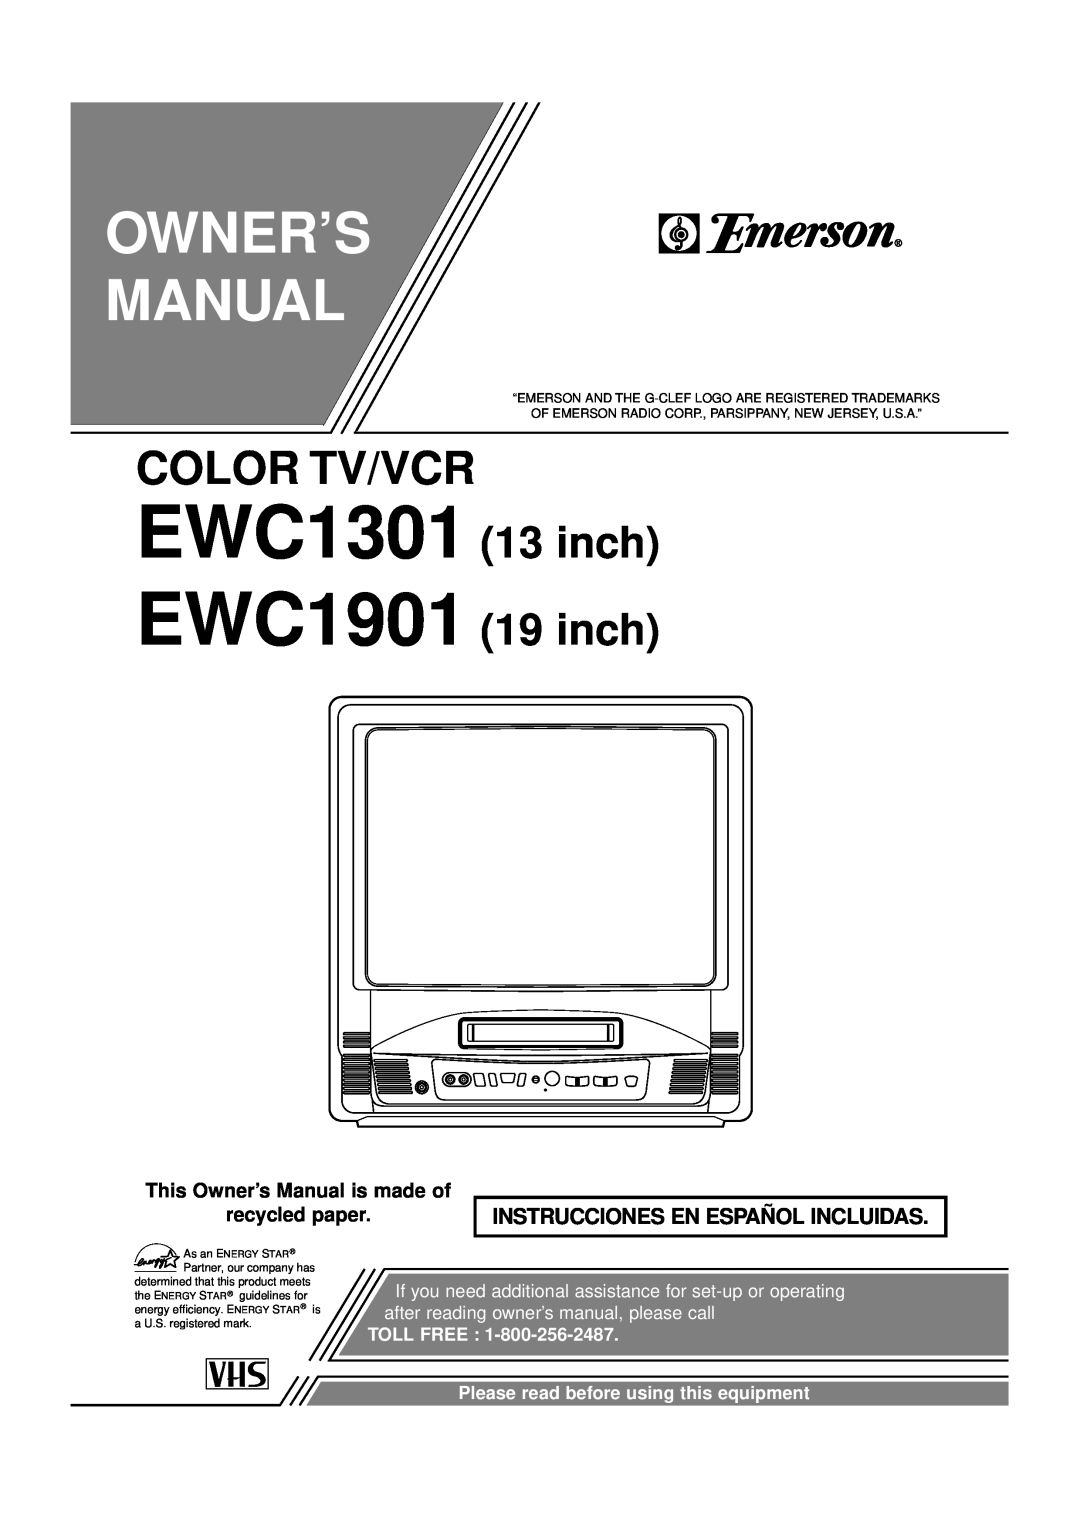 Emerson owner manual EWC1301 EWC1901, Color Tv/Vcr, inch 19 inch, Instrucciones En Español Incluidas, Toll Free 